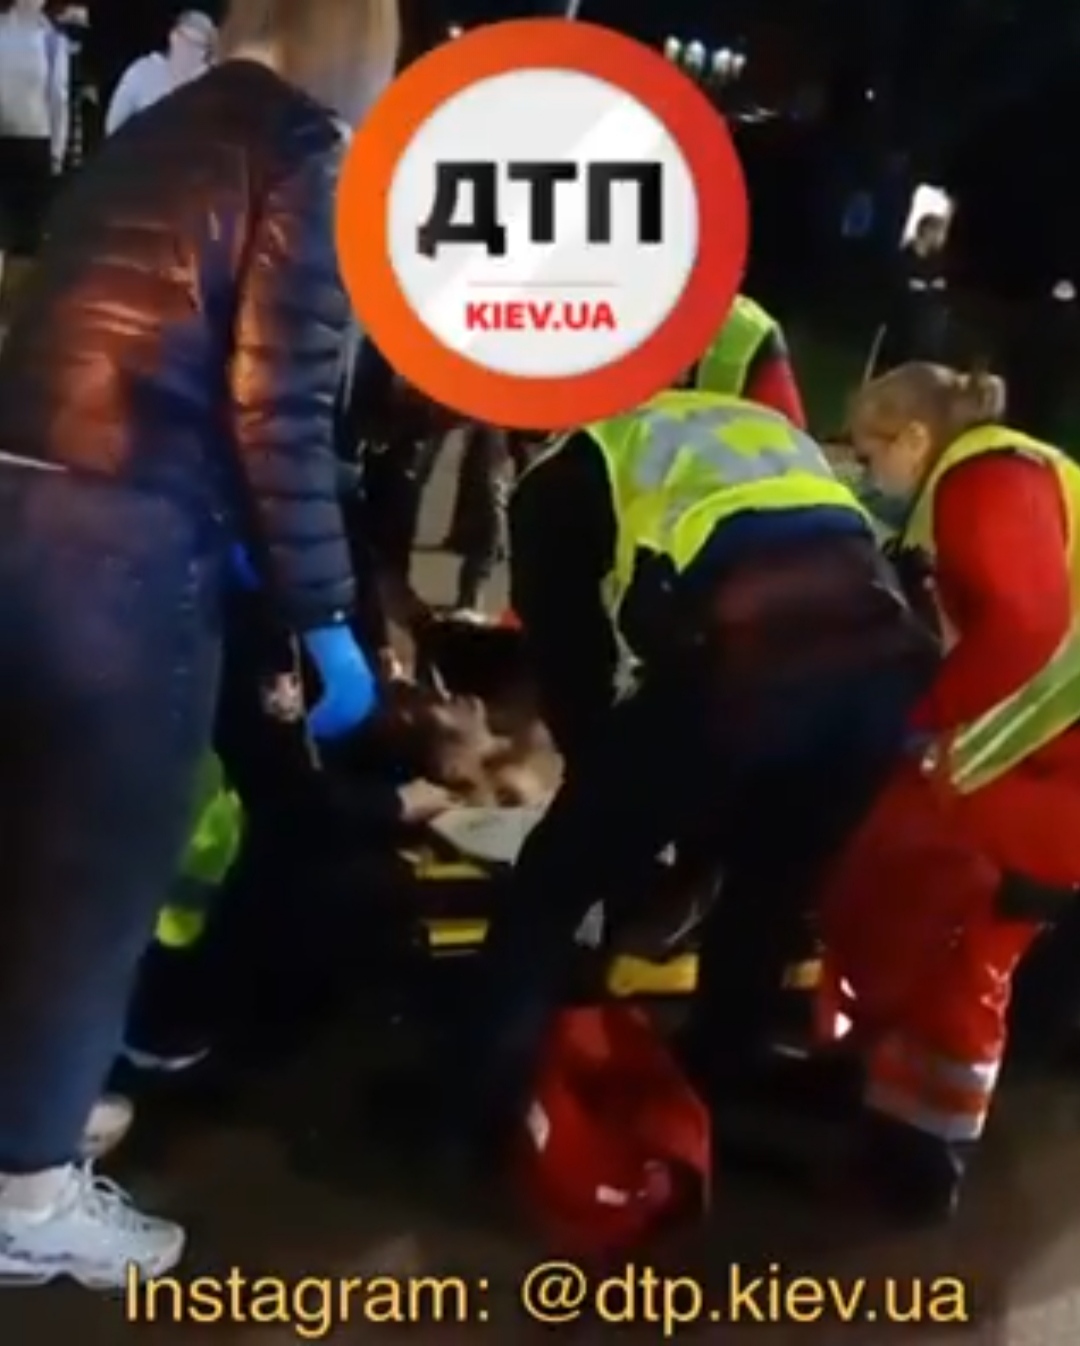 В Киеве на улице Шептицкого произошло серьезное ДТП - автомобиль Volkswagen сбил человека на пешеходном переходе, отбросив его на проезжающий Nissan